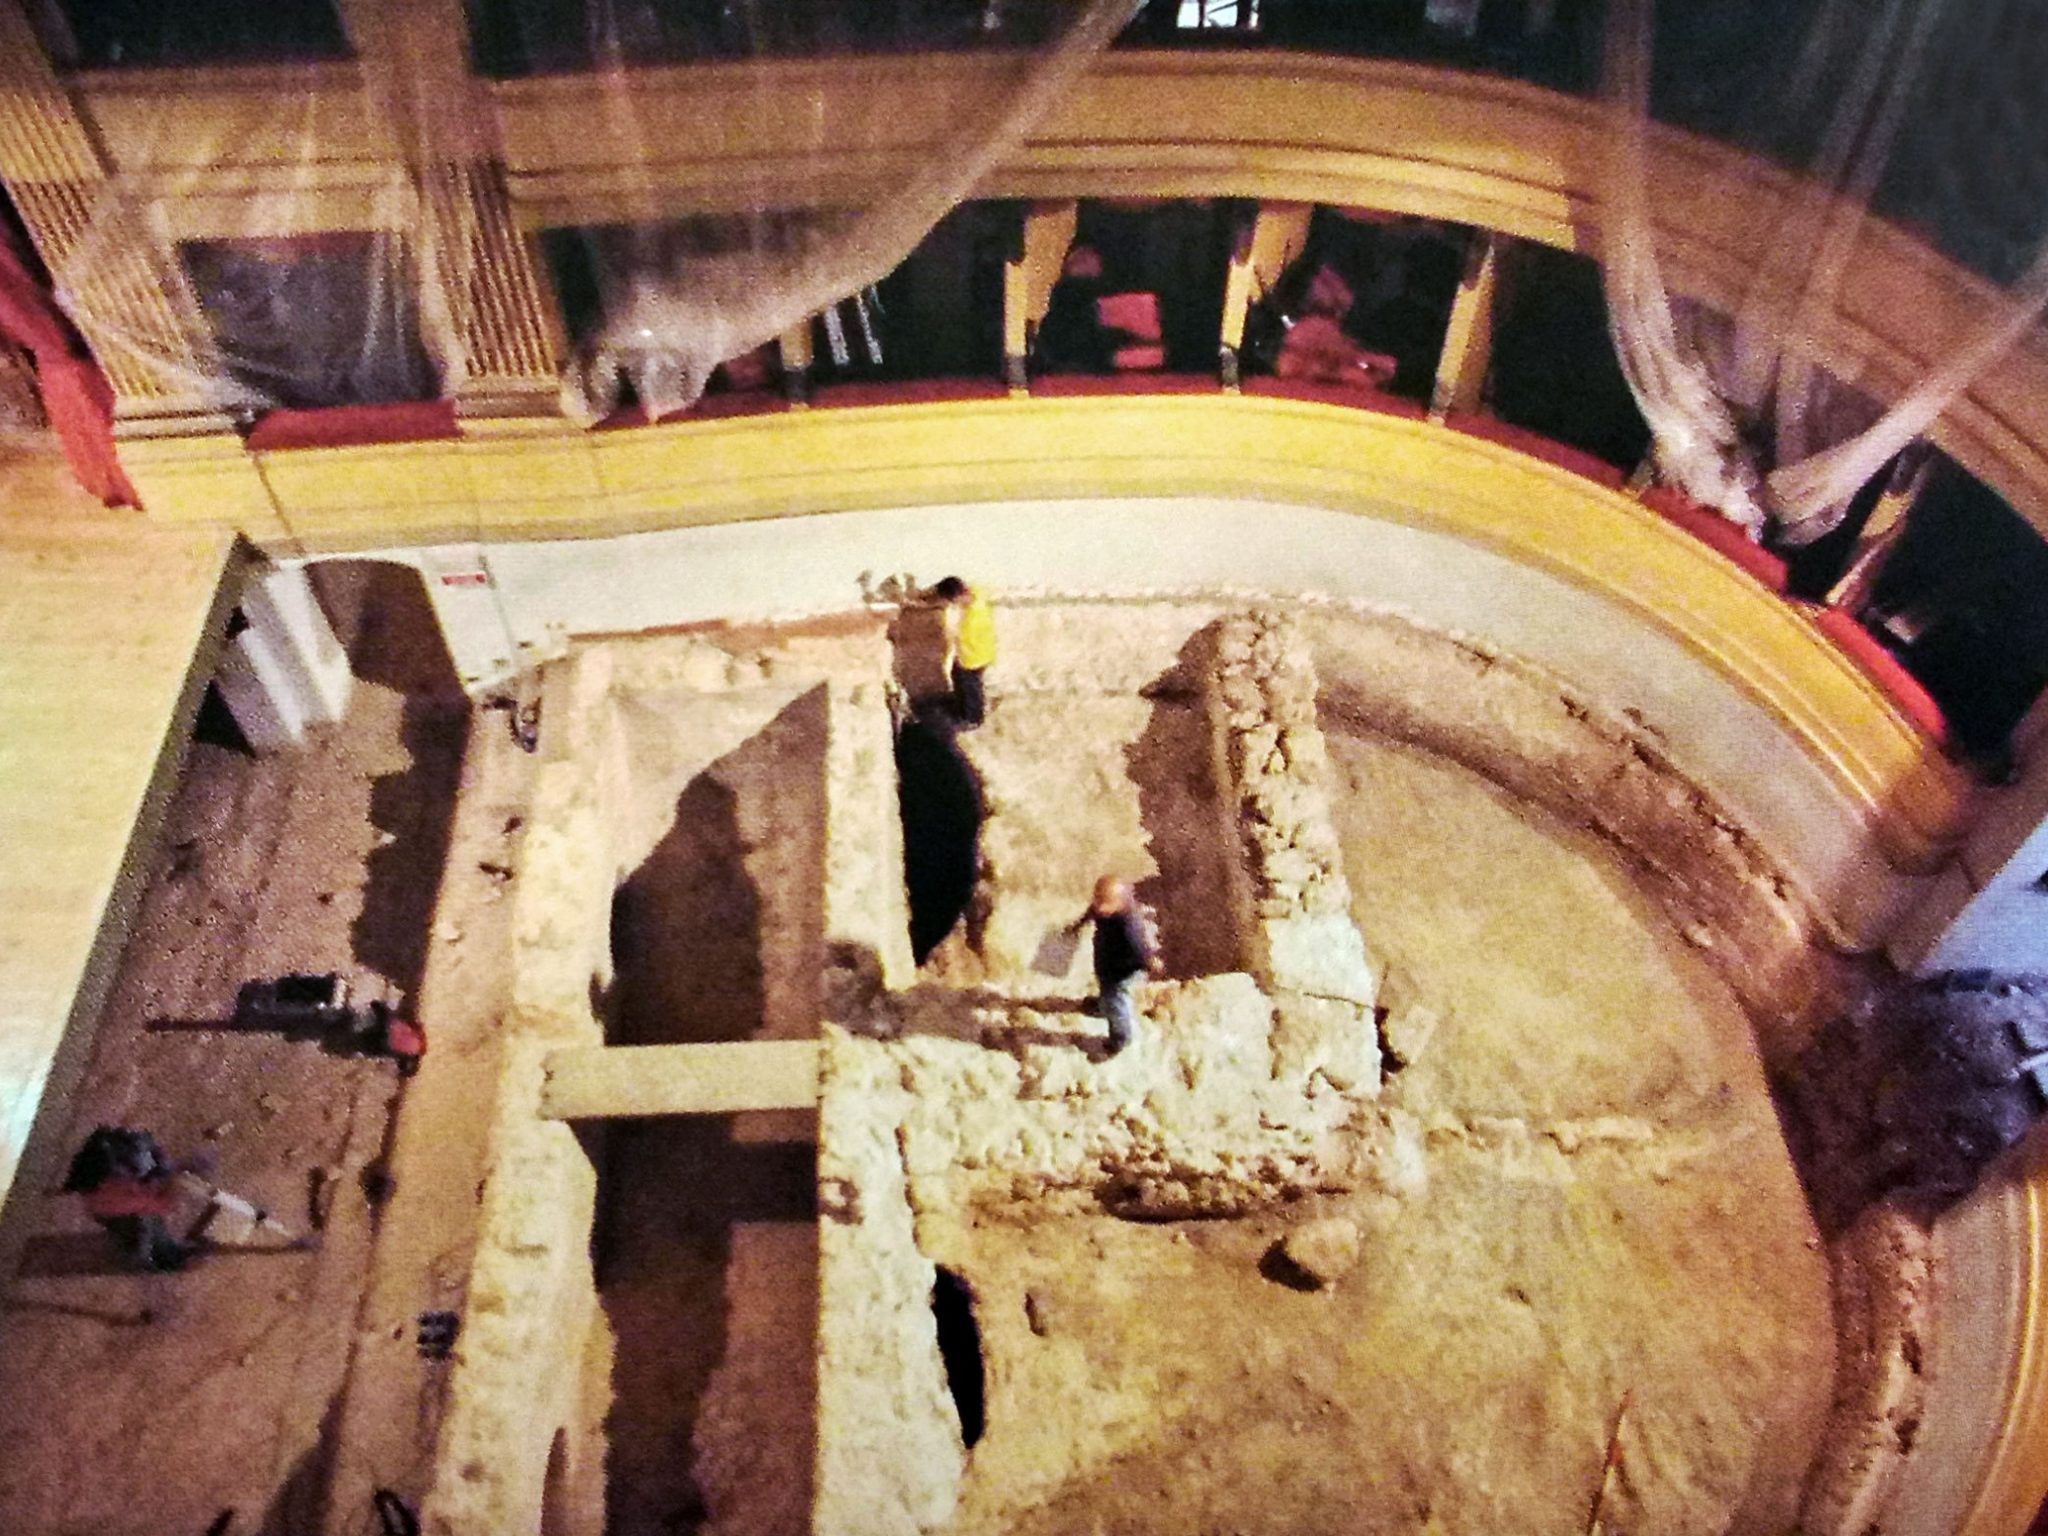 Interventi di restauro del Teatro Civico di Alghero nel 2004, dal libro “Alghero: Archeologia di una città medievale” di Marco Milanese.